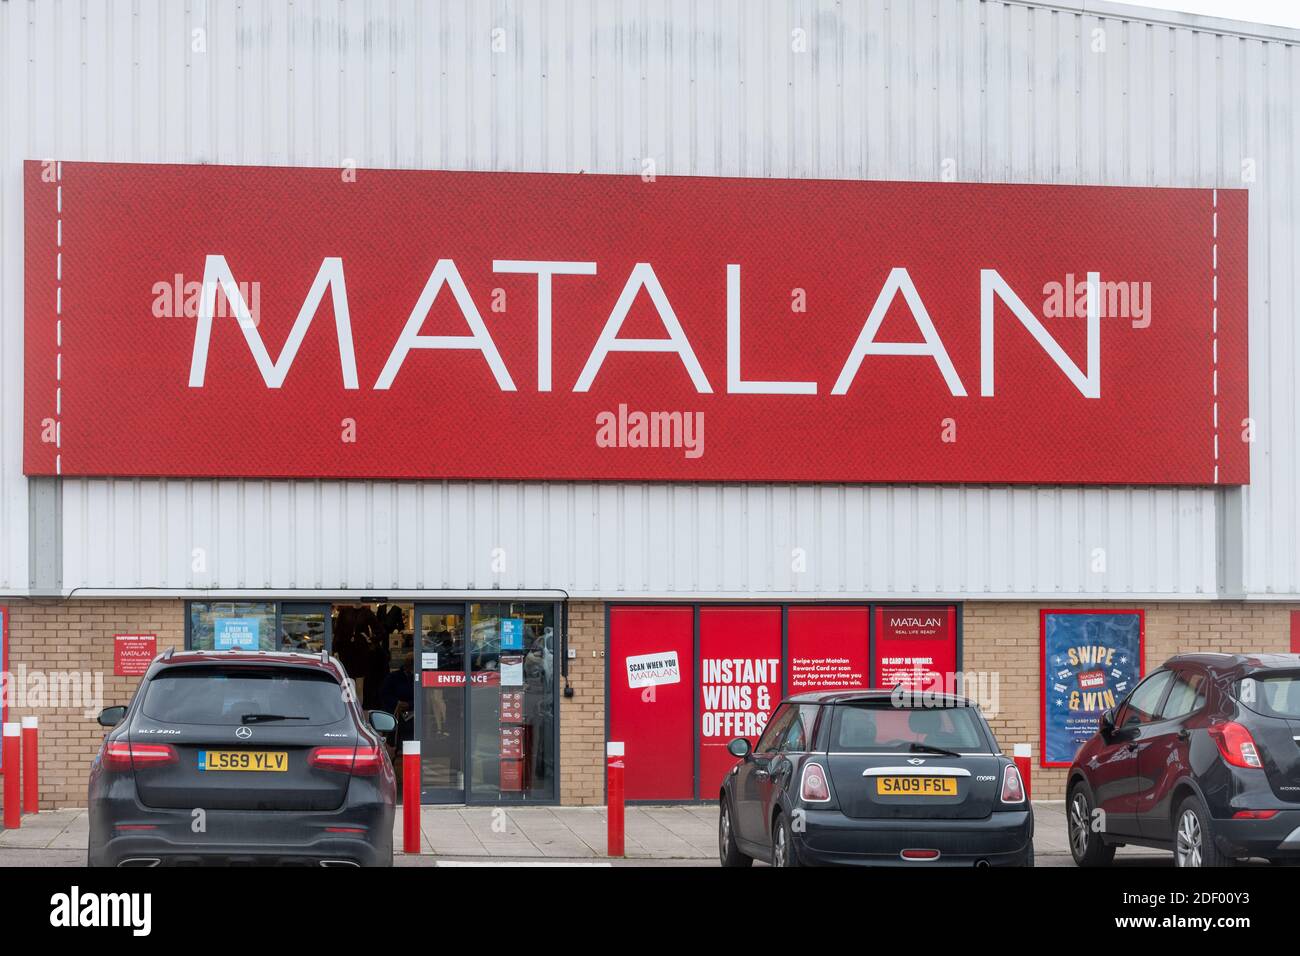 Matalan Store front, minorista británico de moda y artículos para el hogar, Reino Unido Foto de stock